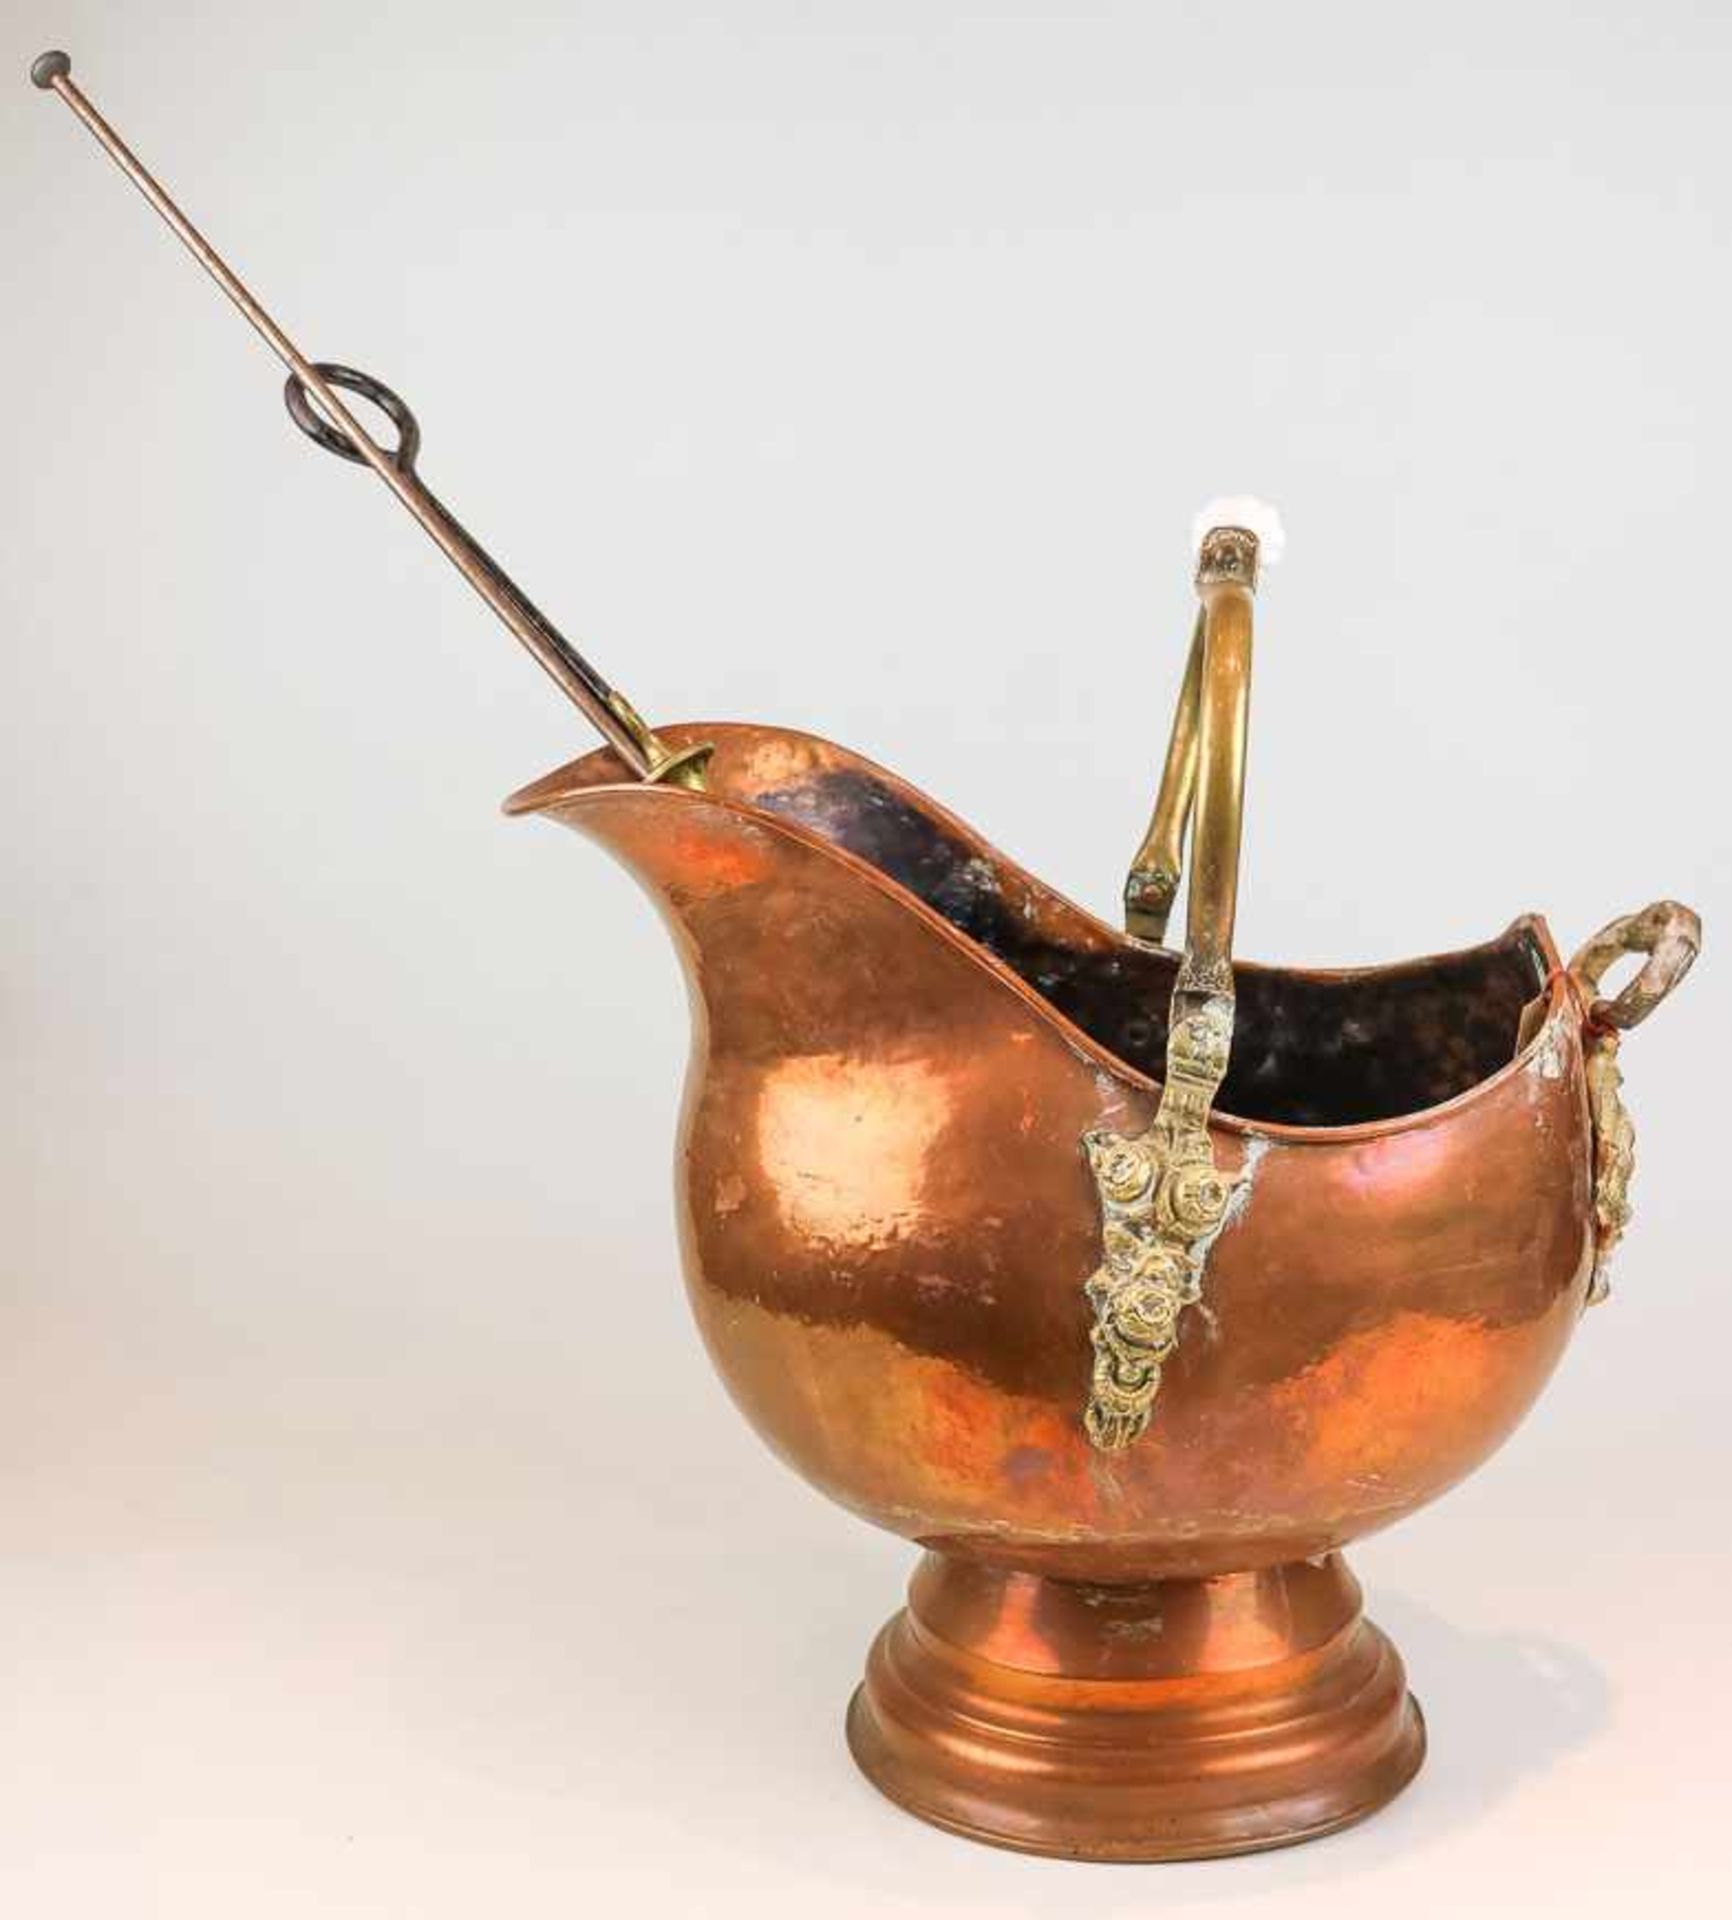 Helm-Kanne. Kupfer u. Messing. Beweglicher Bügelhenkel mit Keramikgriff. H. 36 cm. Beigegeben: 1